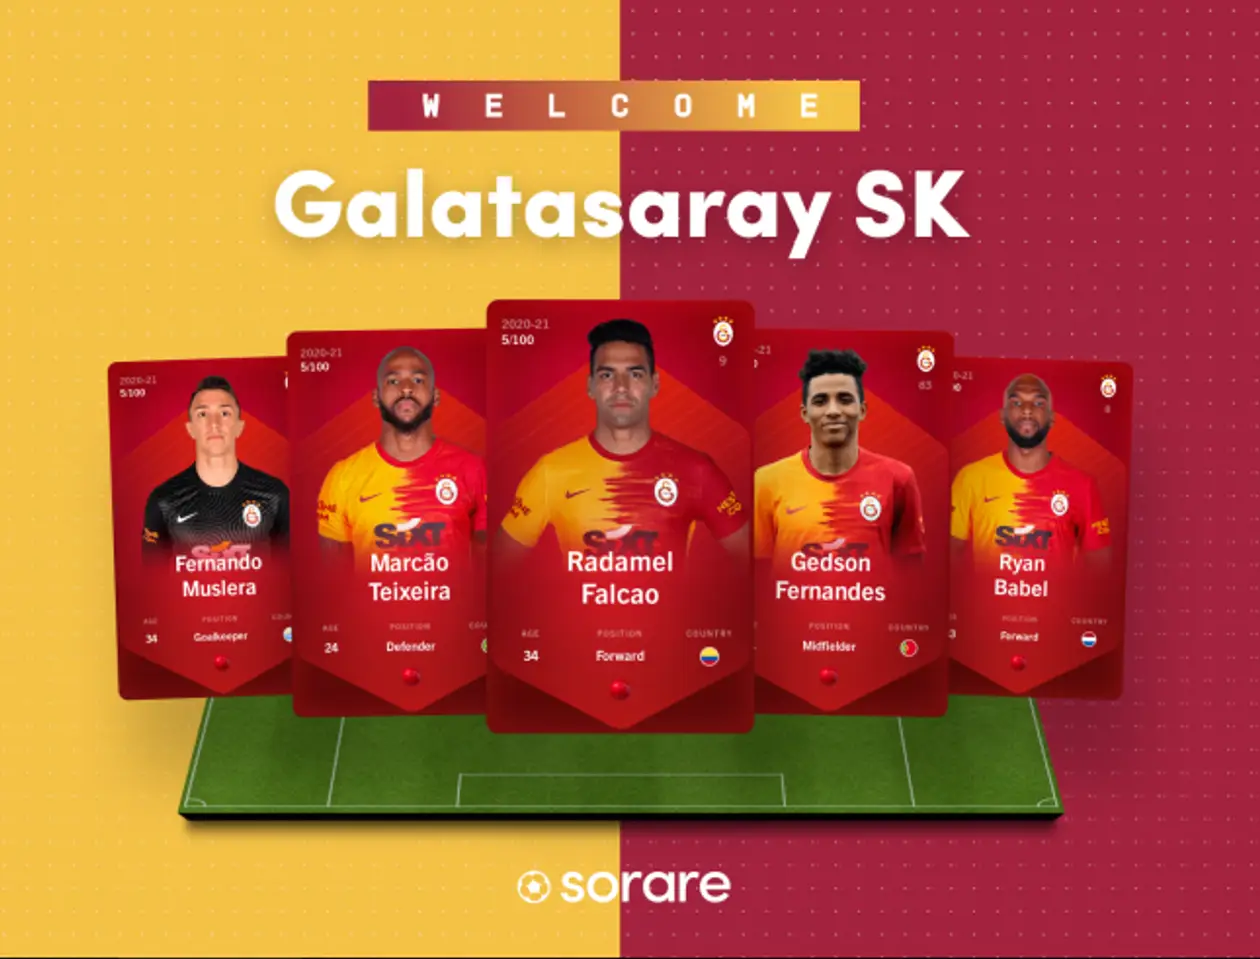 К футбольной фэнтези Sorare присоединился Galatasaray